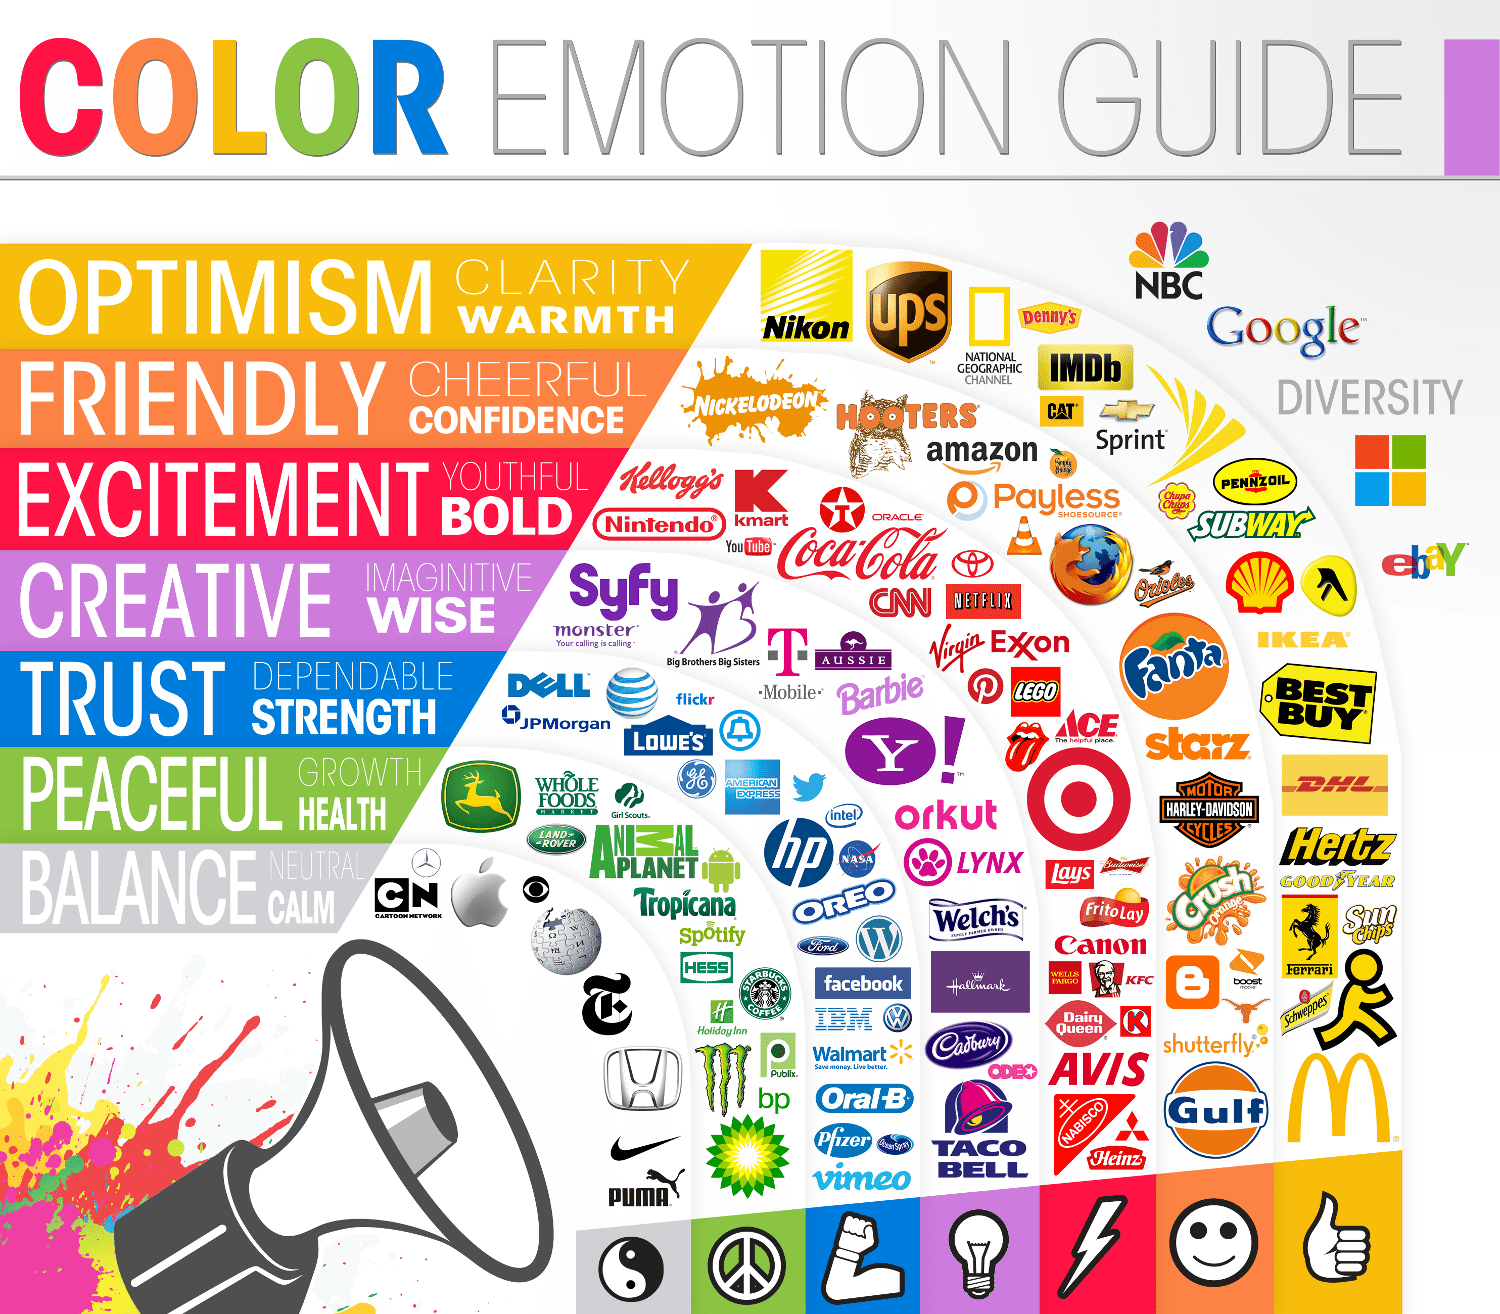 La conexión entre color y emoción, tomando como ejemplo las mejores empresas